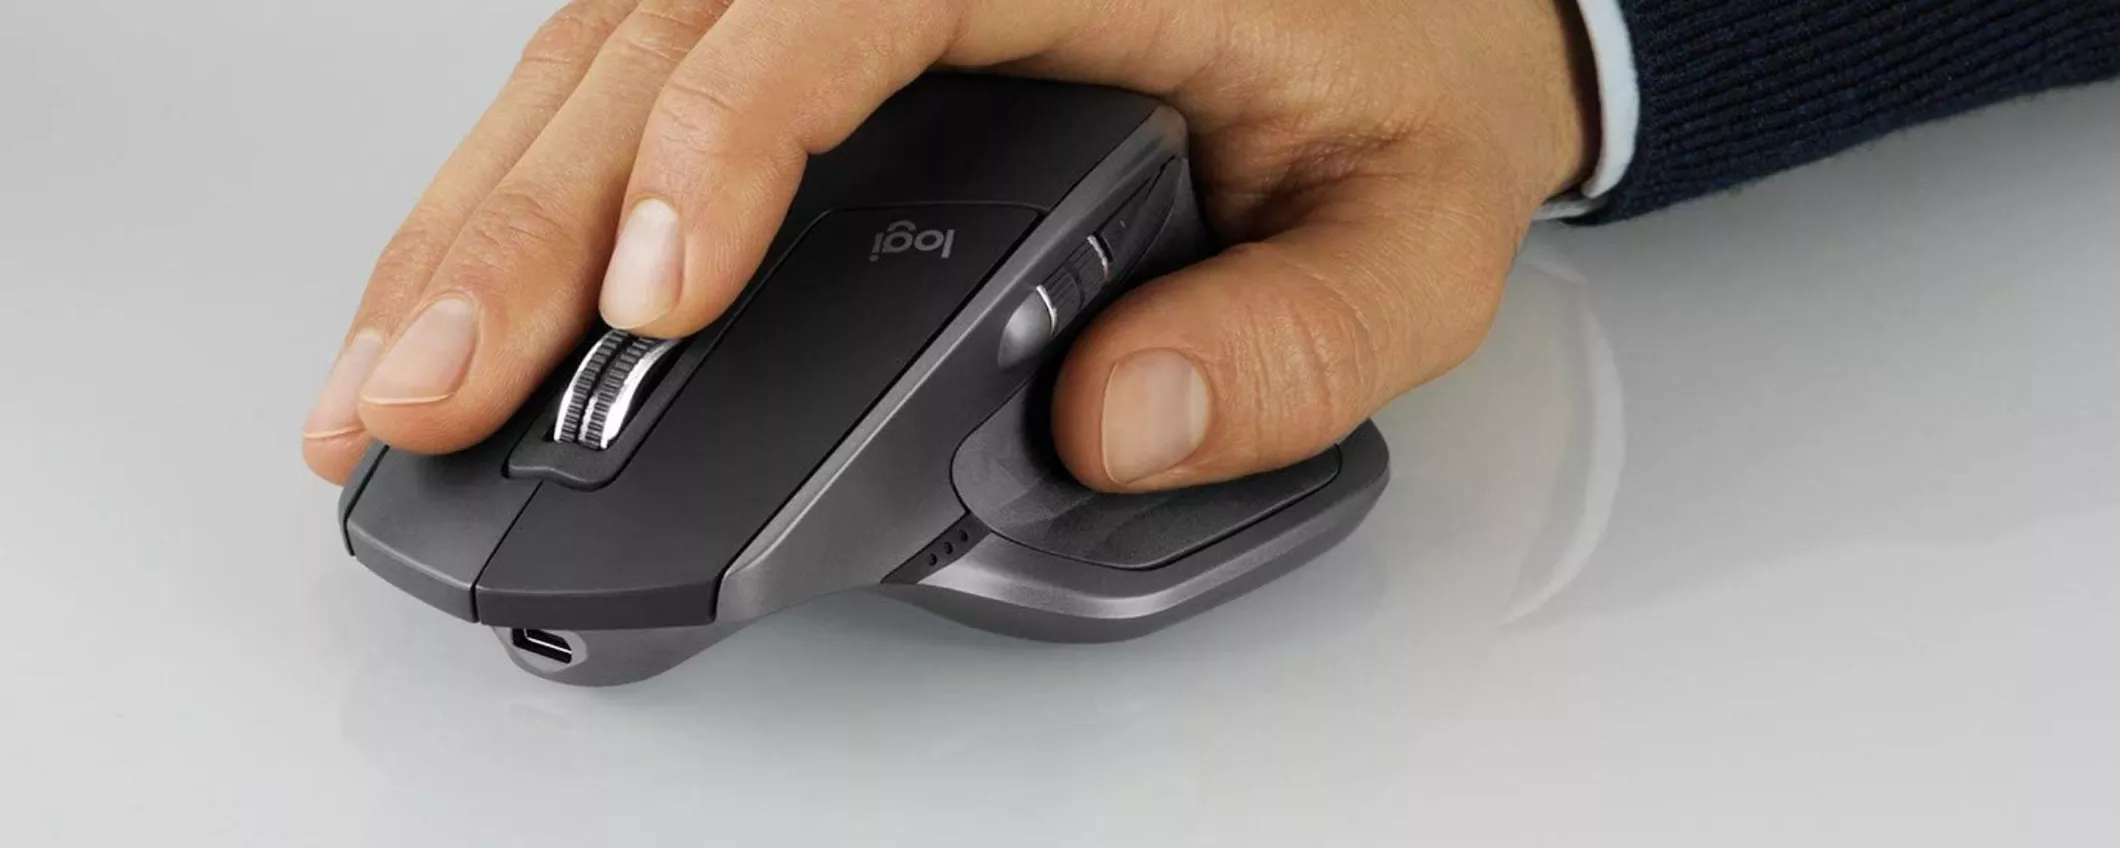 Mouse MX Master 2S di Logitech perfetto per qualsiasi superficie, offerta su Amazon